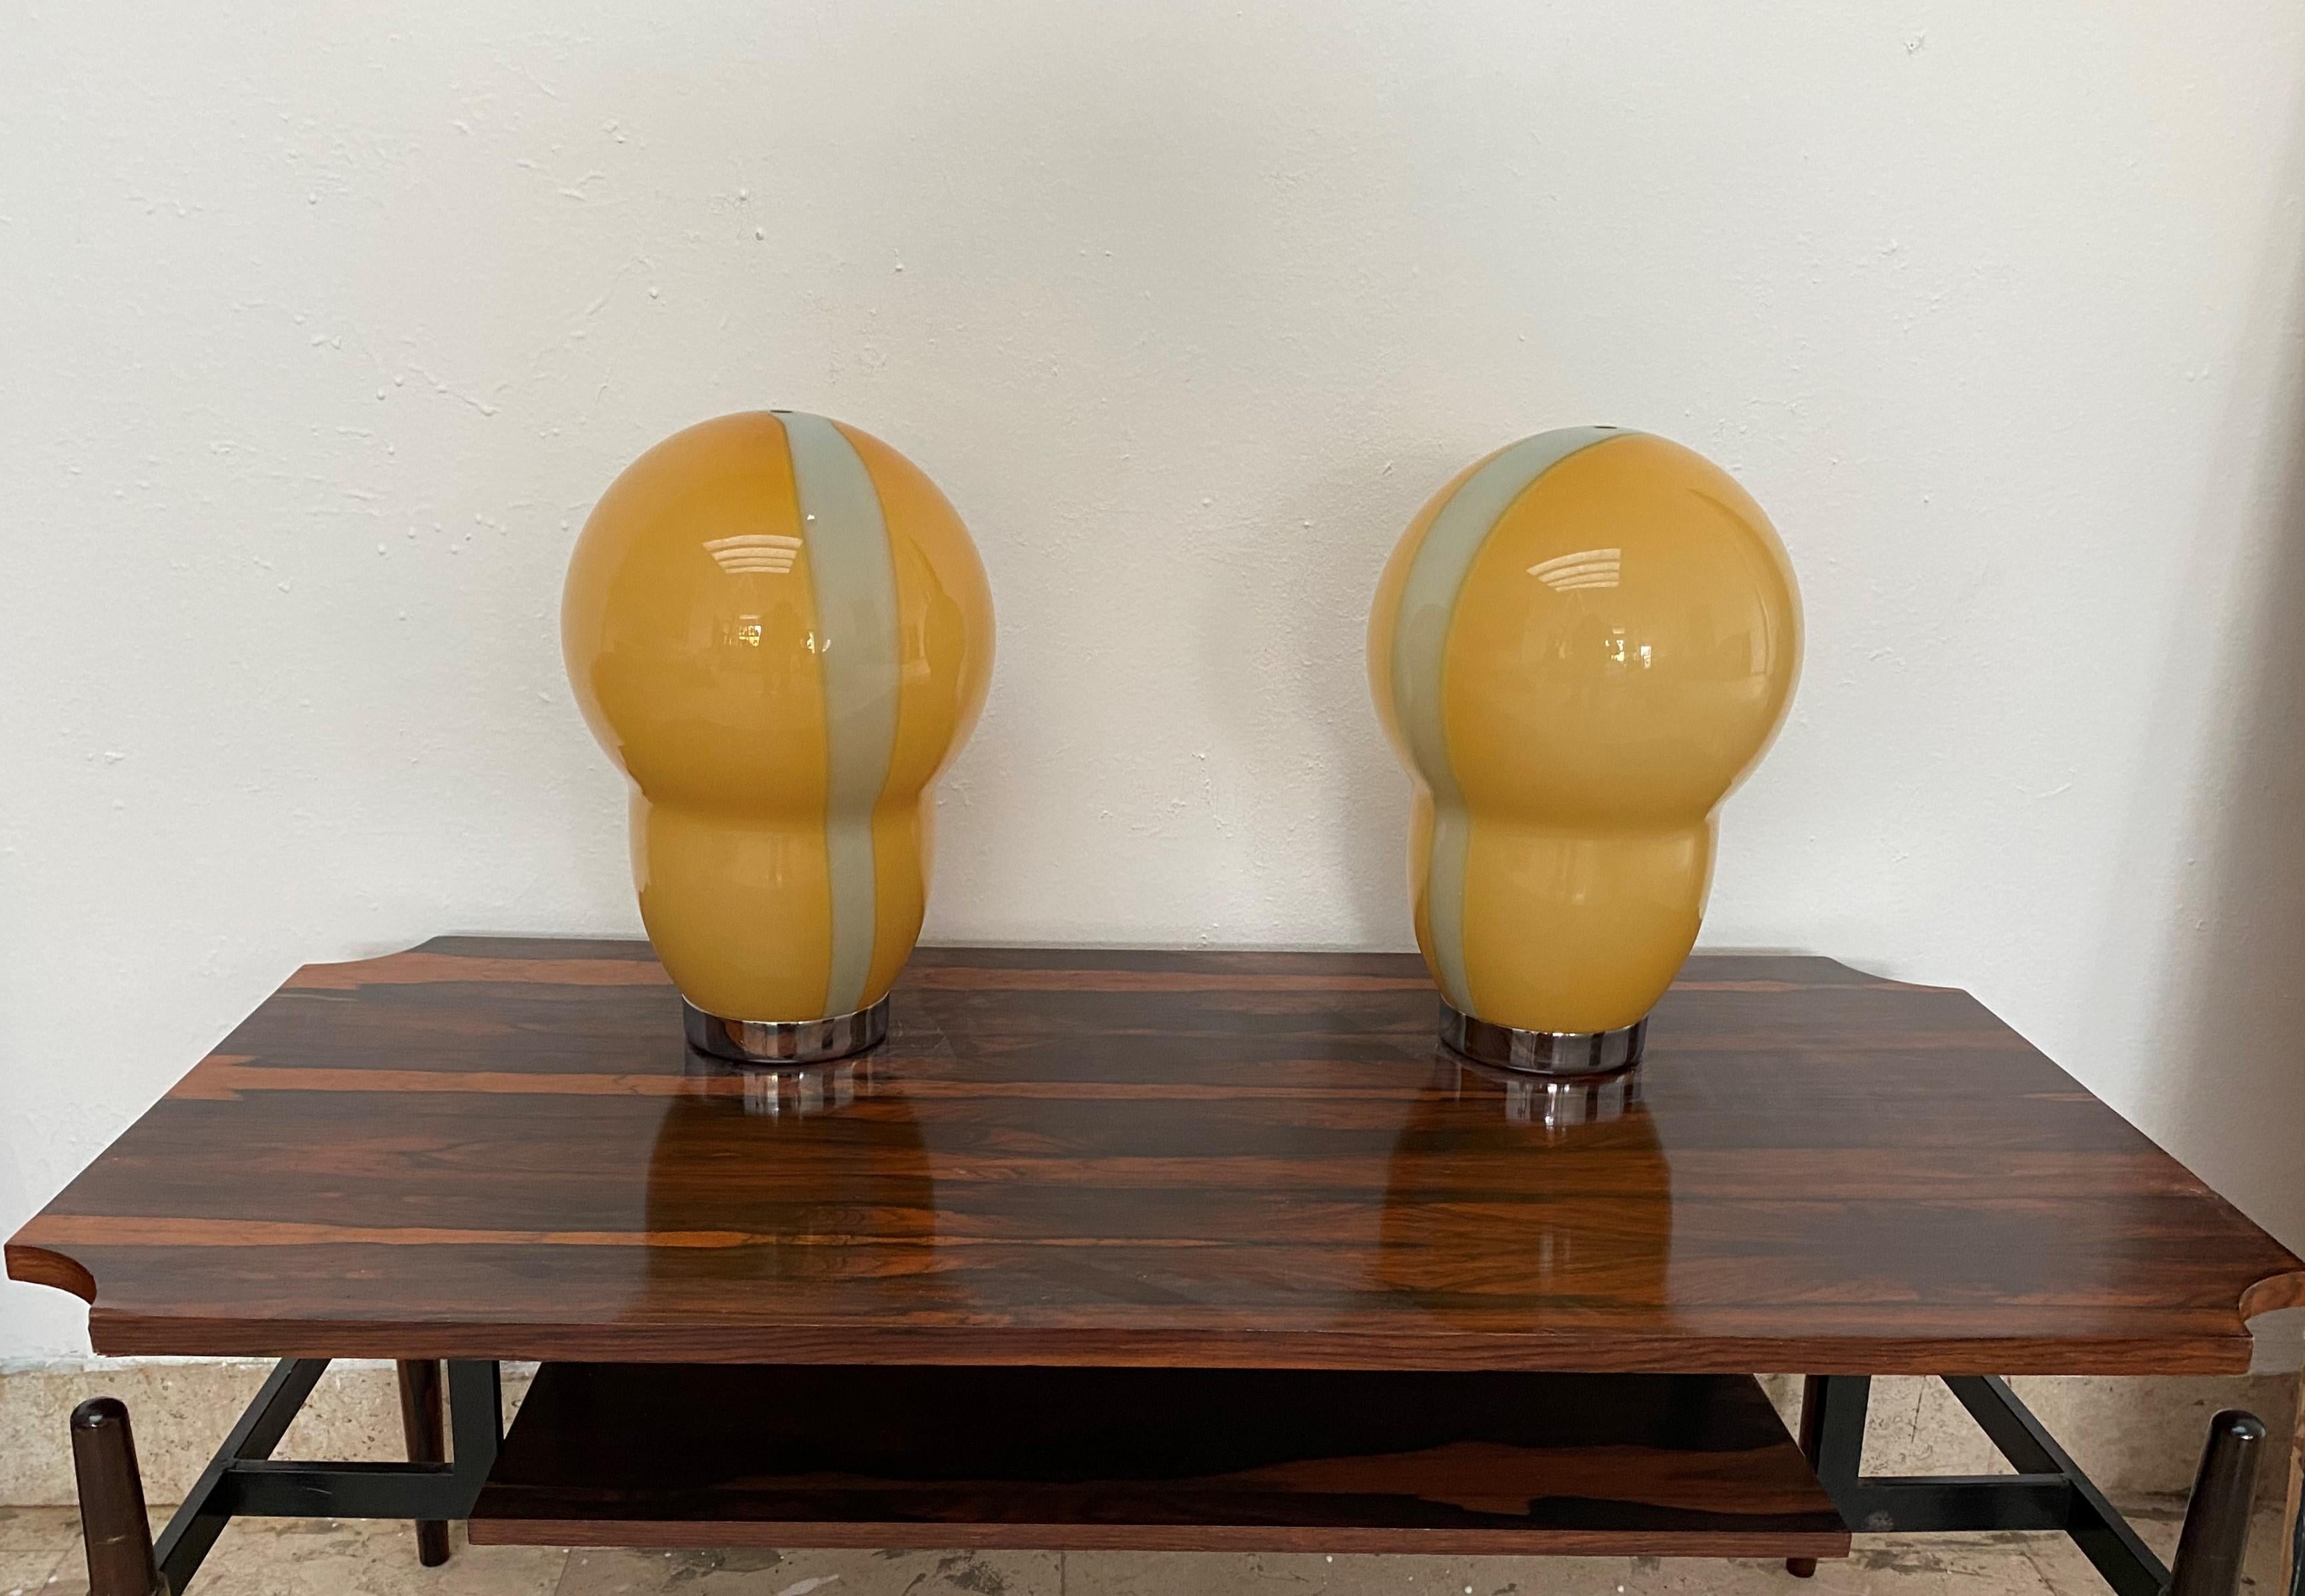 Magnifique  lampes de table en verre de Murano soufflé à la bouche de couleur orange et verte.
Conçu par Ettore Sottsass pour Venini et fabriqué en 1994.
L'abat-jour en verre est signé 